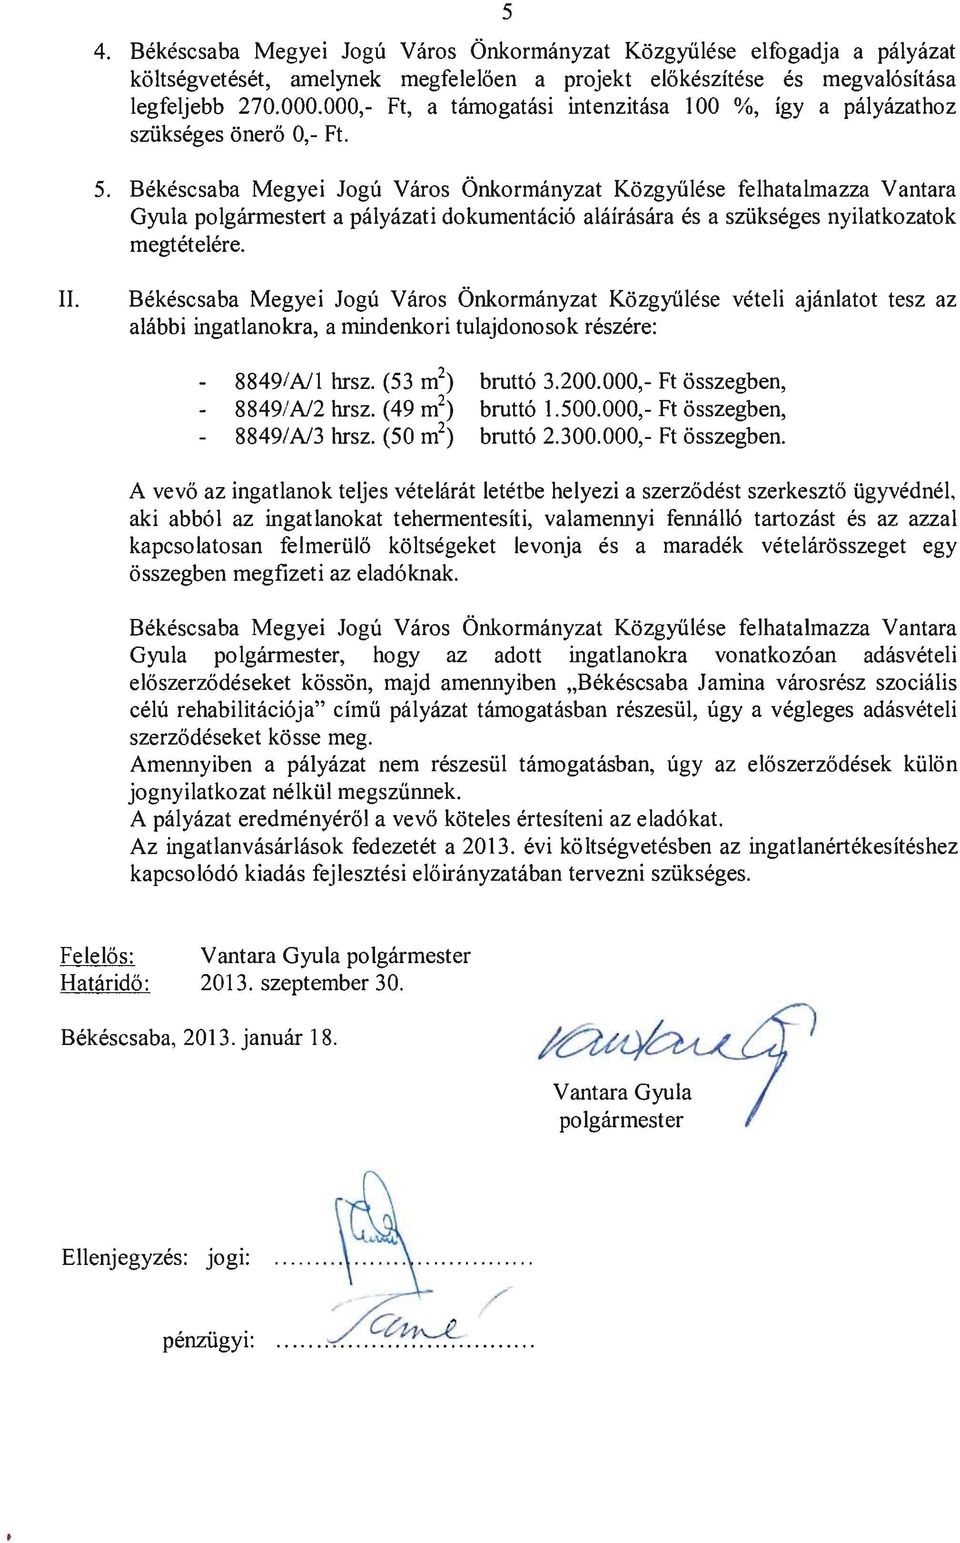 Bekescsaba Megyei Jogu Varos Onkormanyzat Kozgyiilese felhatalmazza Vantara Gyula polgarmestert a palyazati dokumentaci6 alairasara es a sziikseges nyilatkozatok megtetelere. II.